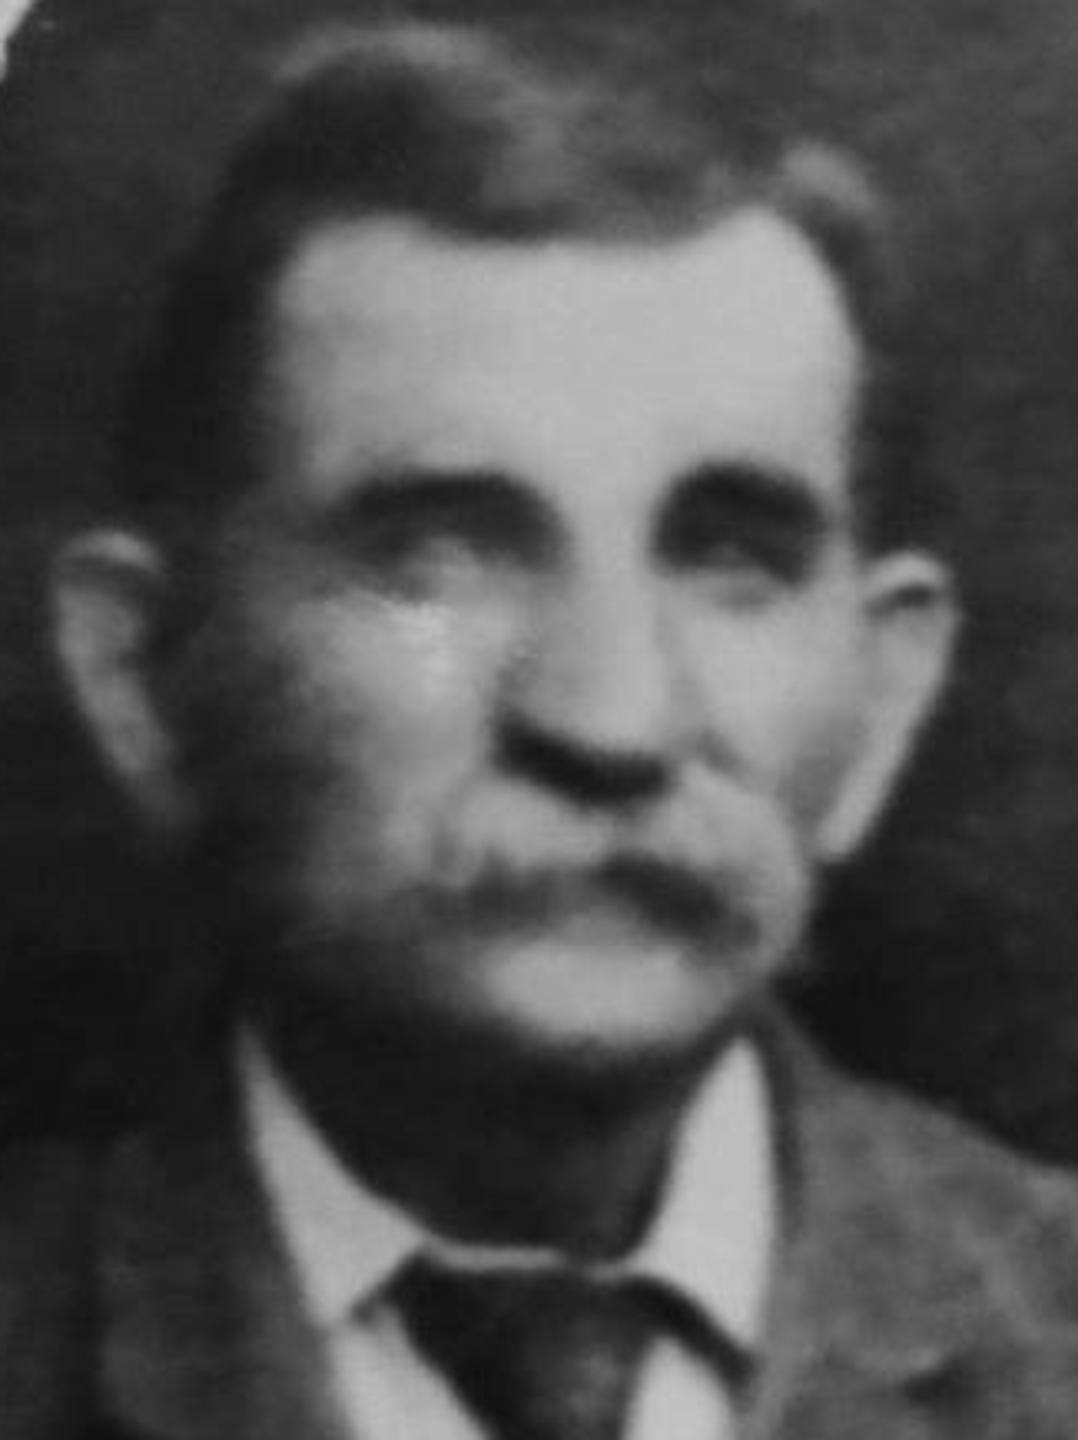 Breinholt, George Larsen